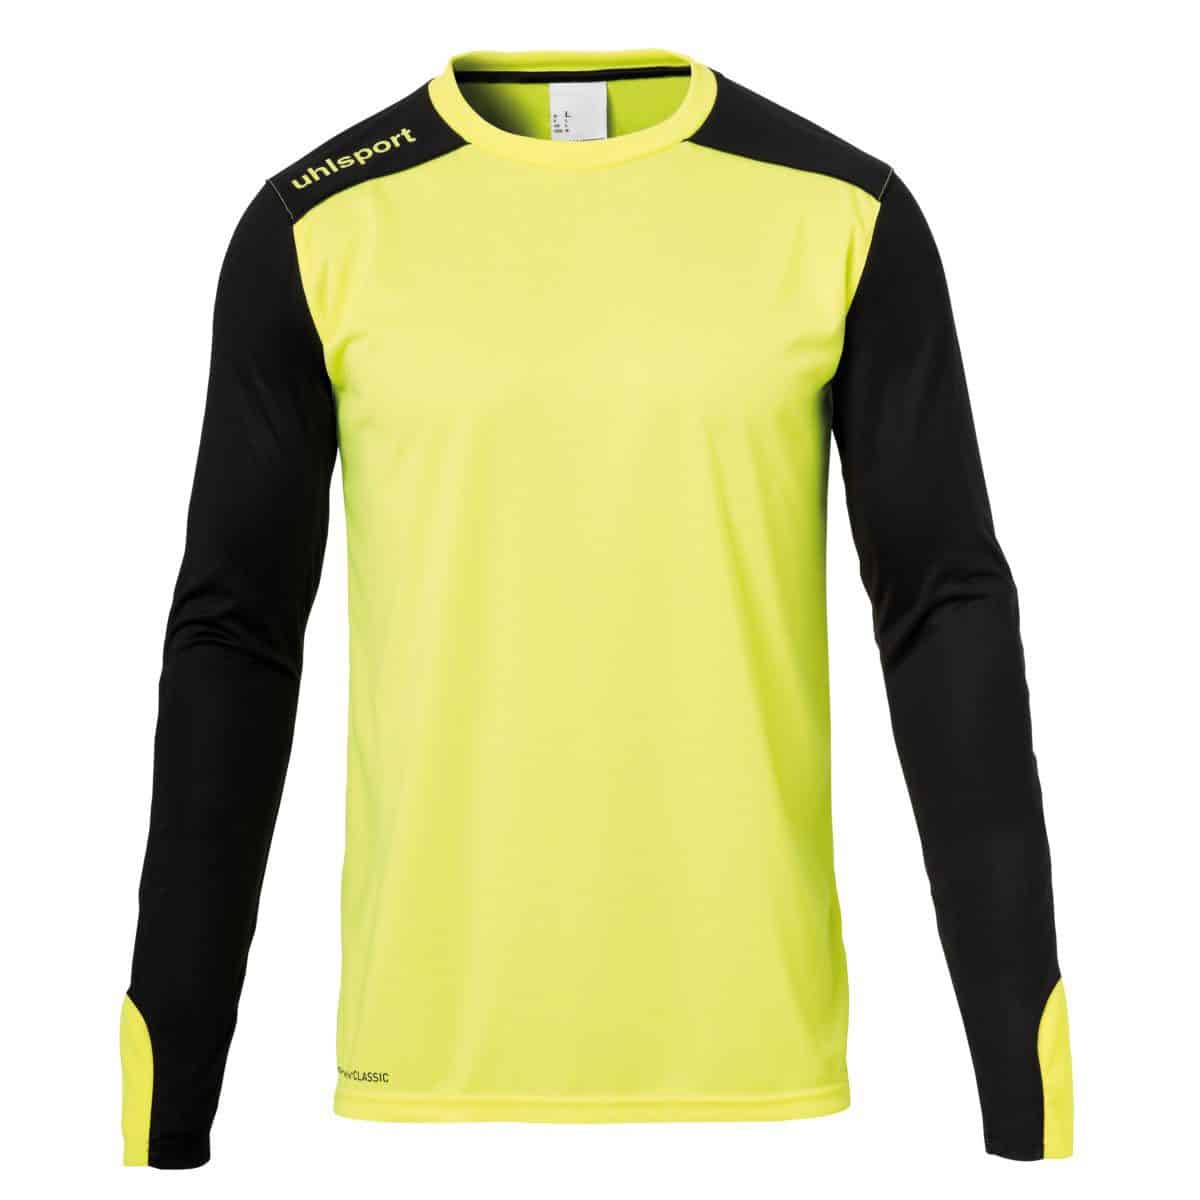 geel-zwart Uhlsport keepersshirt